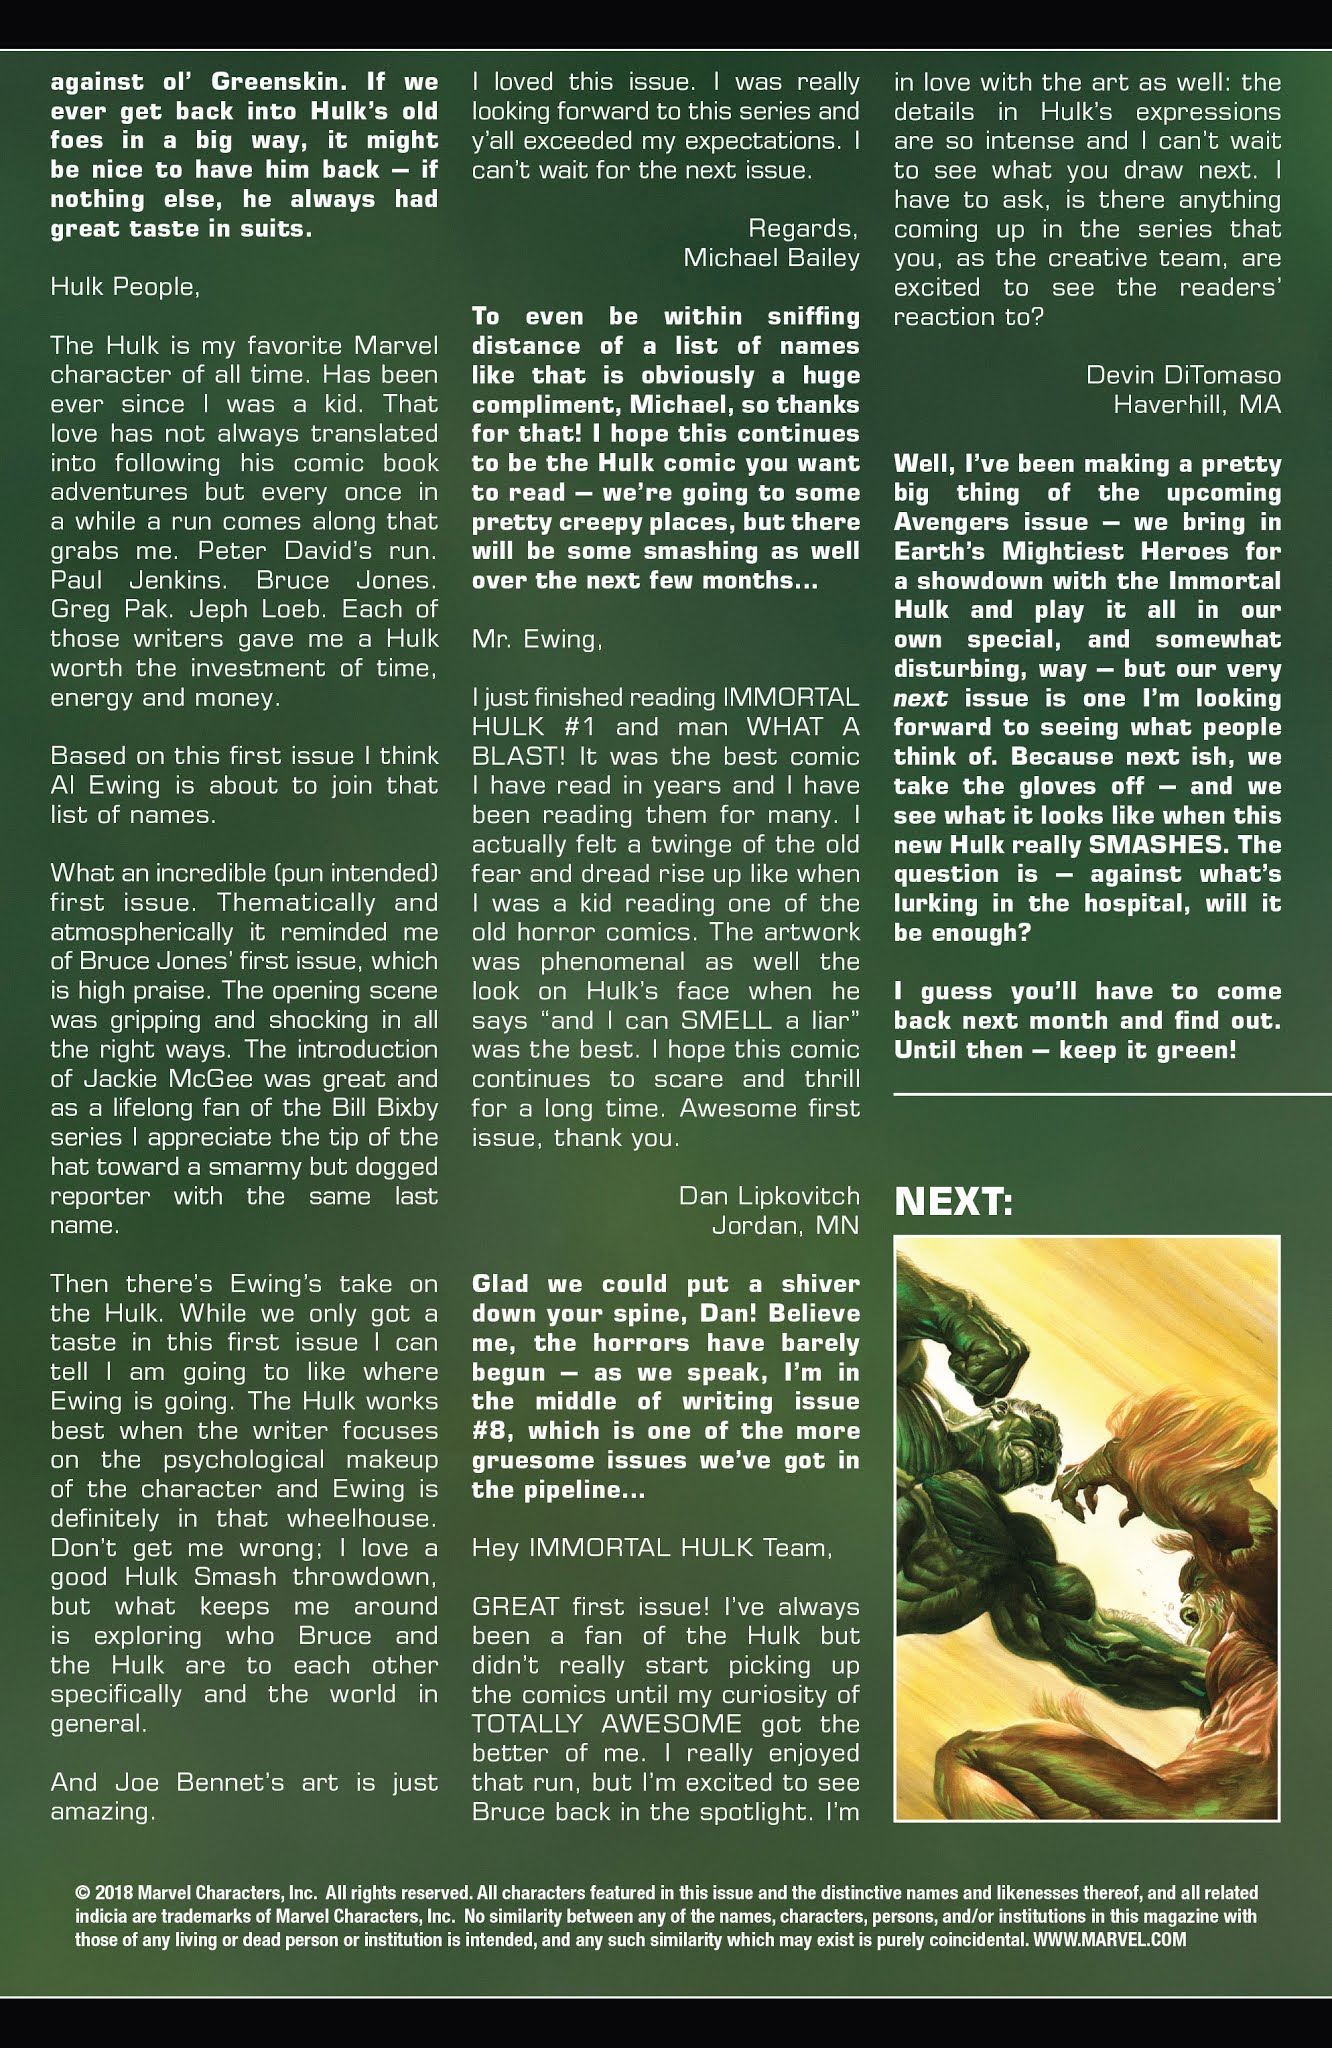 Read online Immortal Hulk comic -  Issue #4 - 23